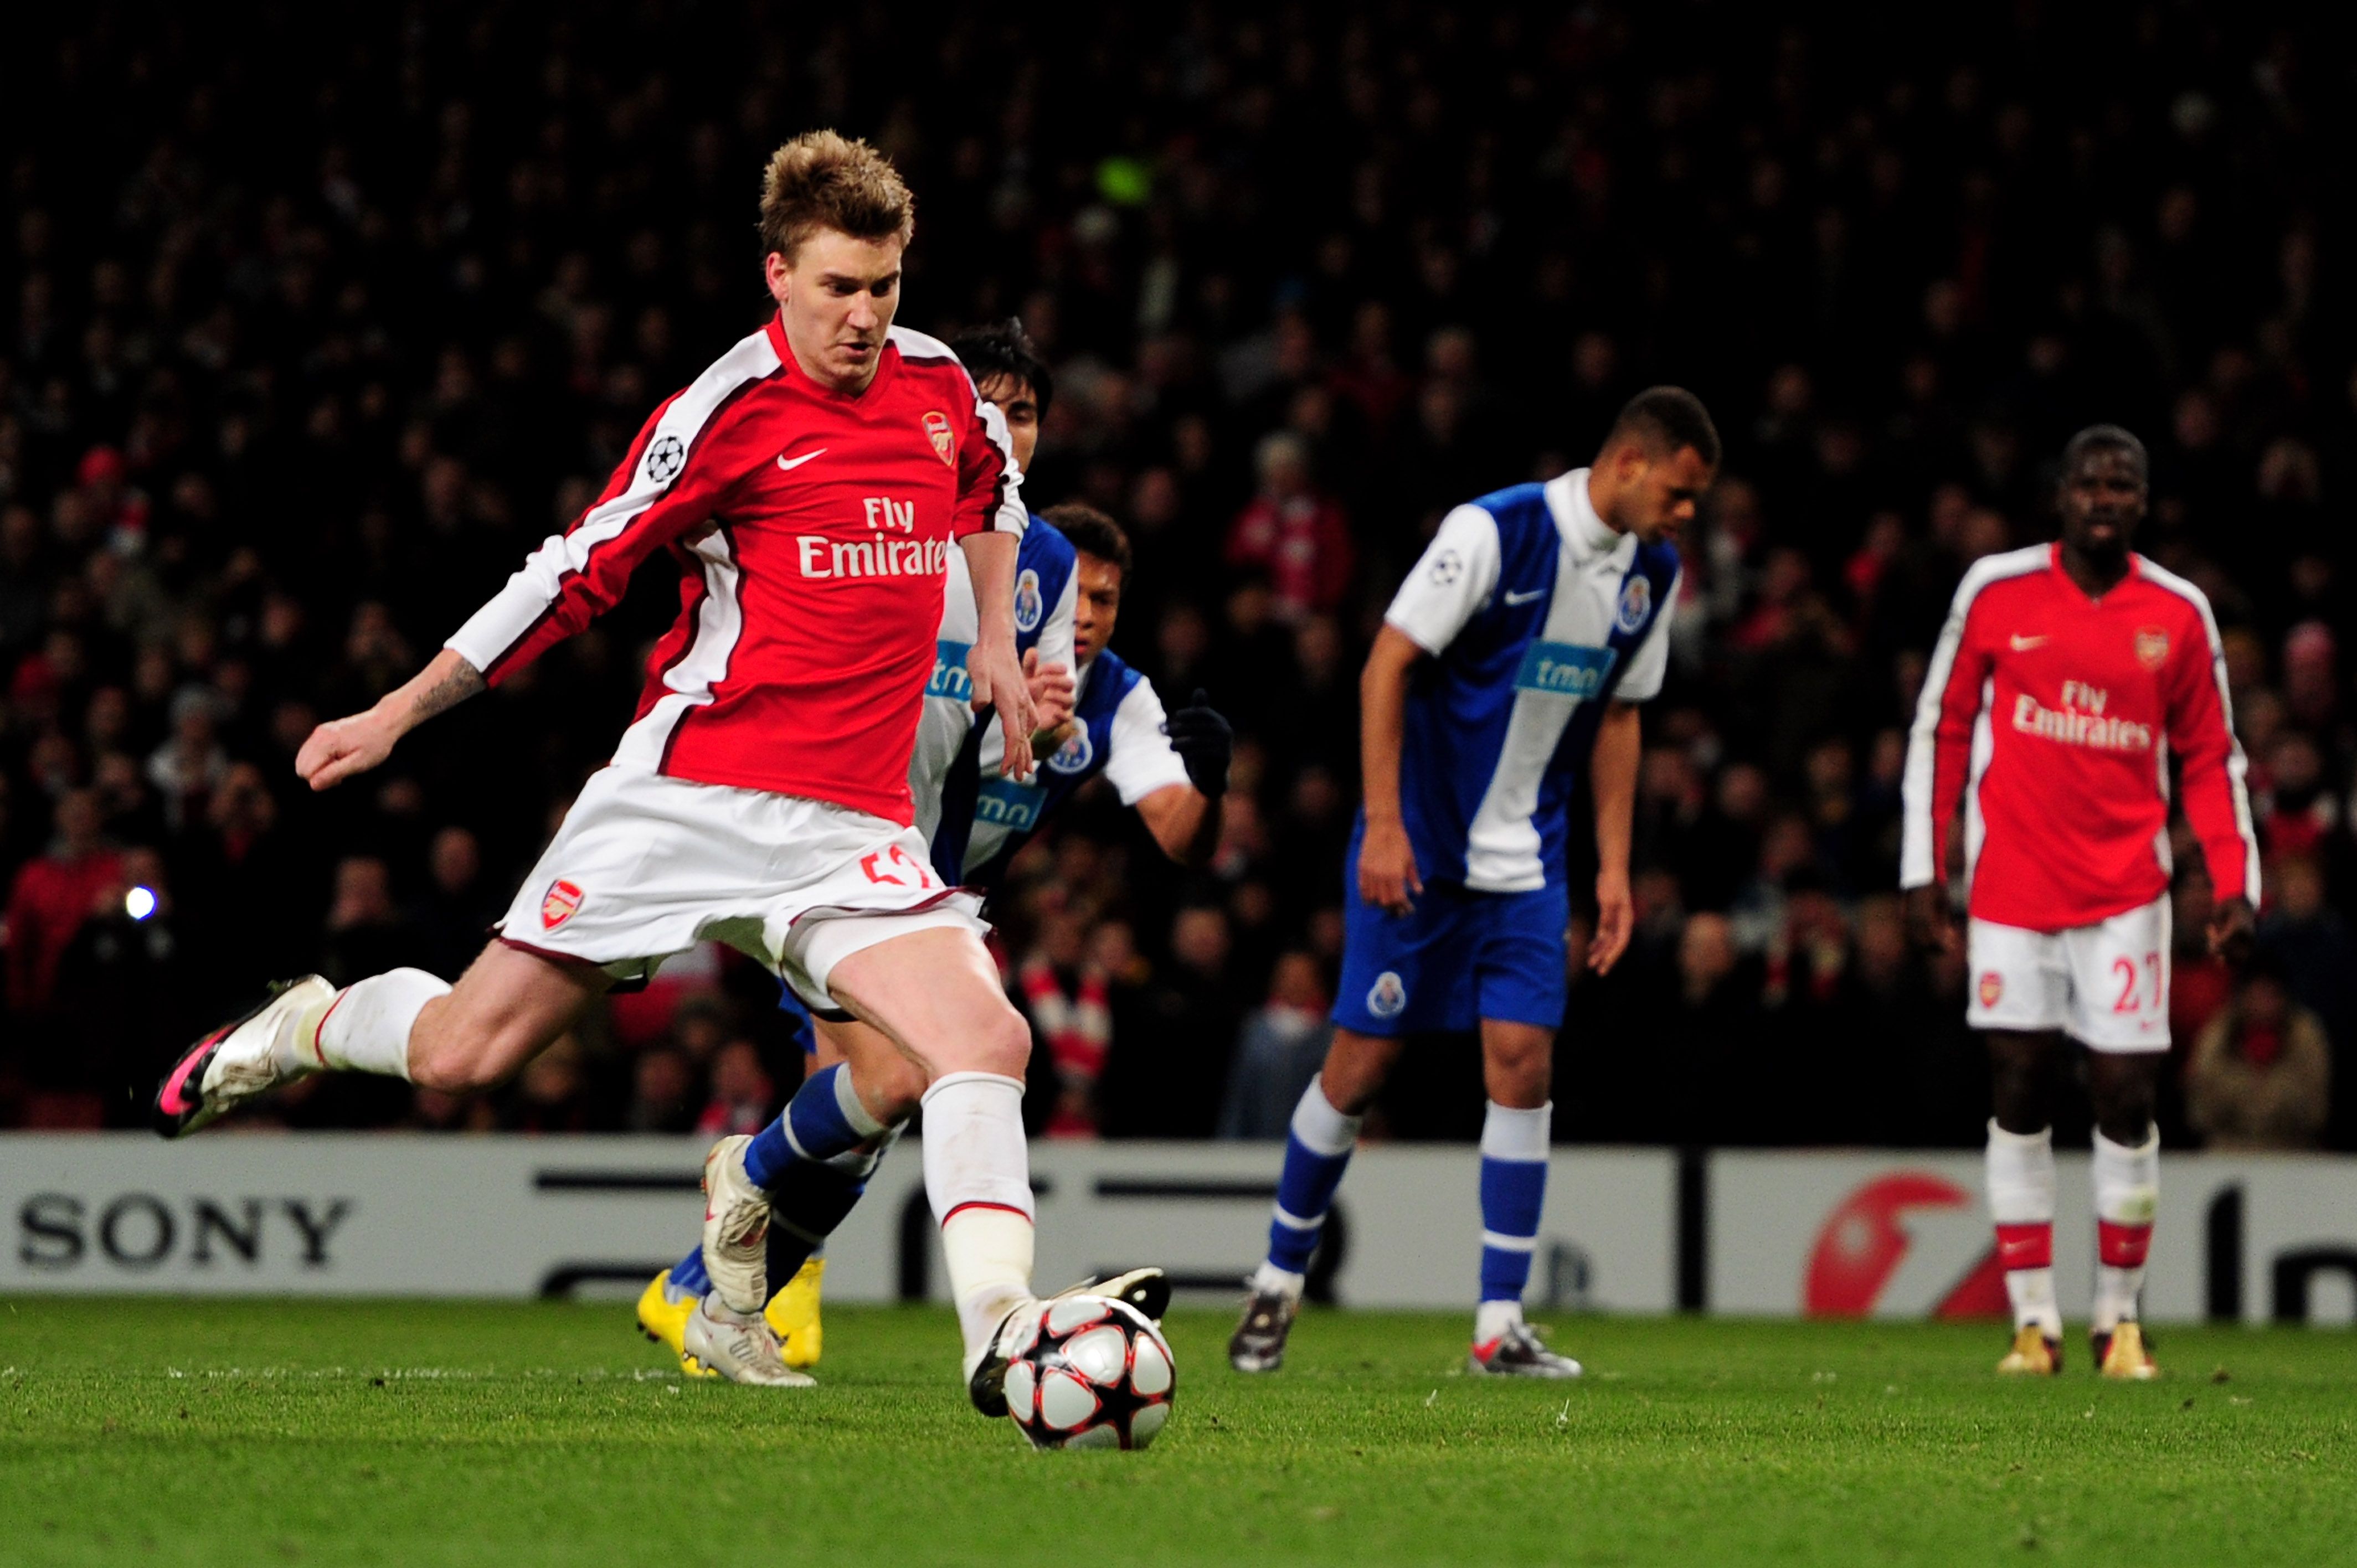 Nicklas Bendtner scores a goal for Arsenal